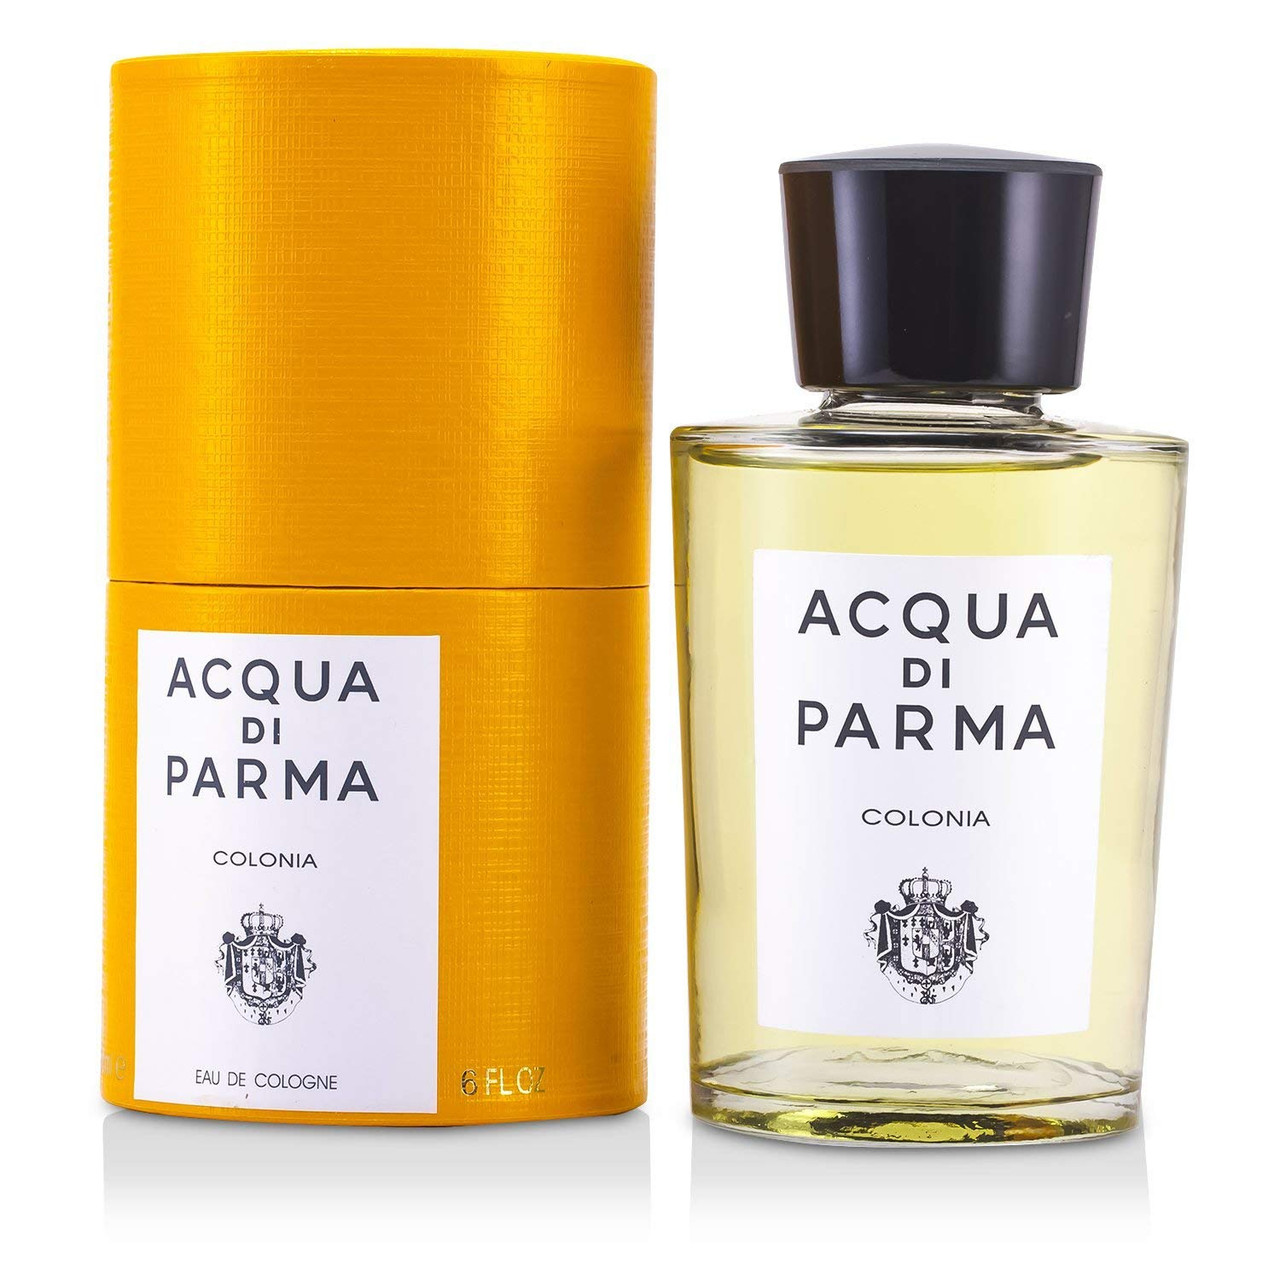 NEW Acqua Di Parma Colonia Pura EDC Spray 180ml Perfume